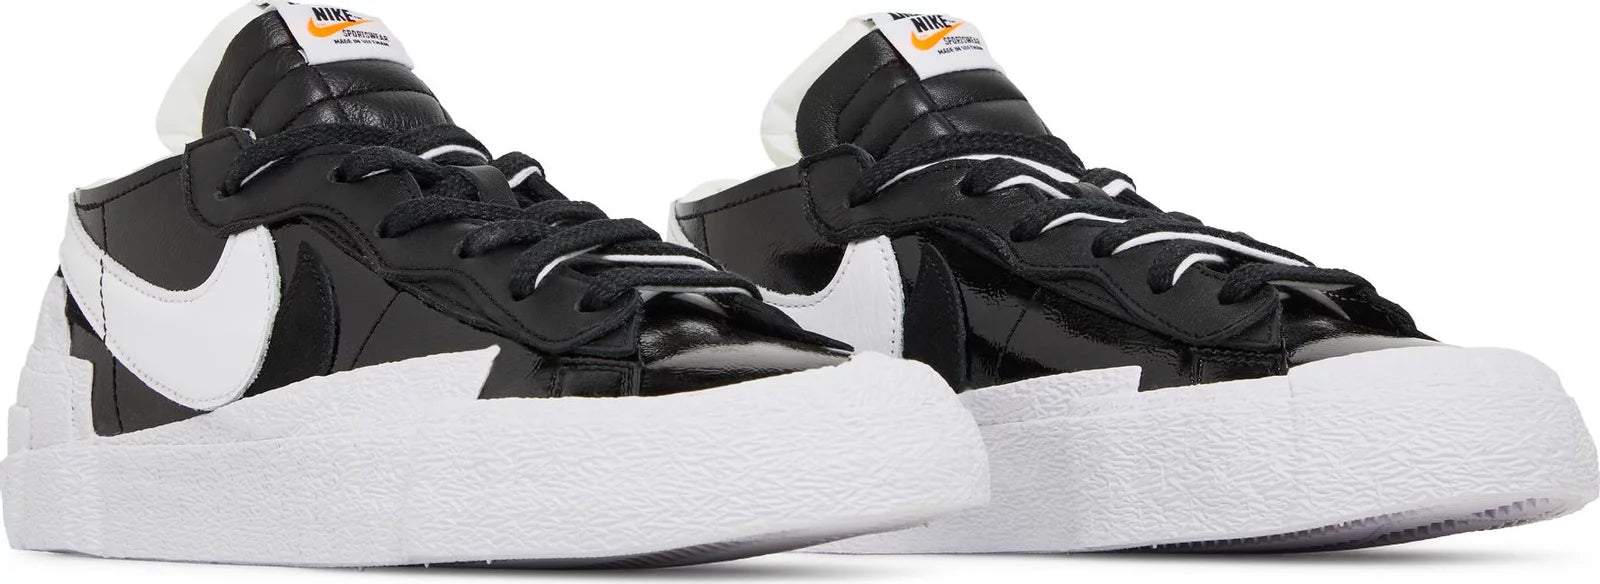 Nike Blazer Low Sacai Black Patent Leather - Supra Sneakers